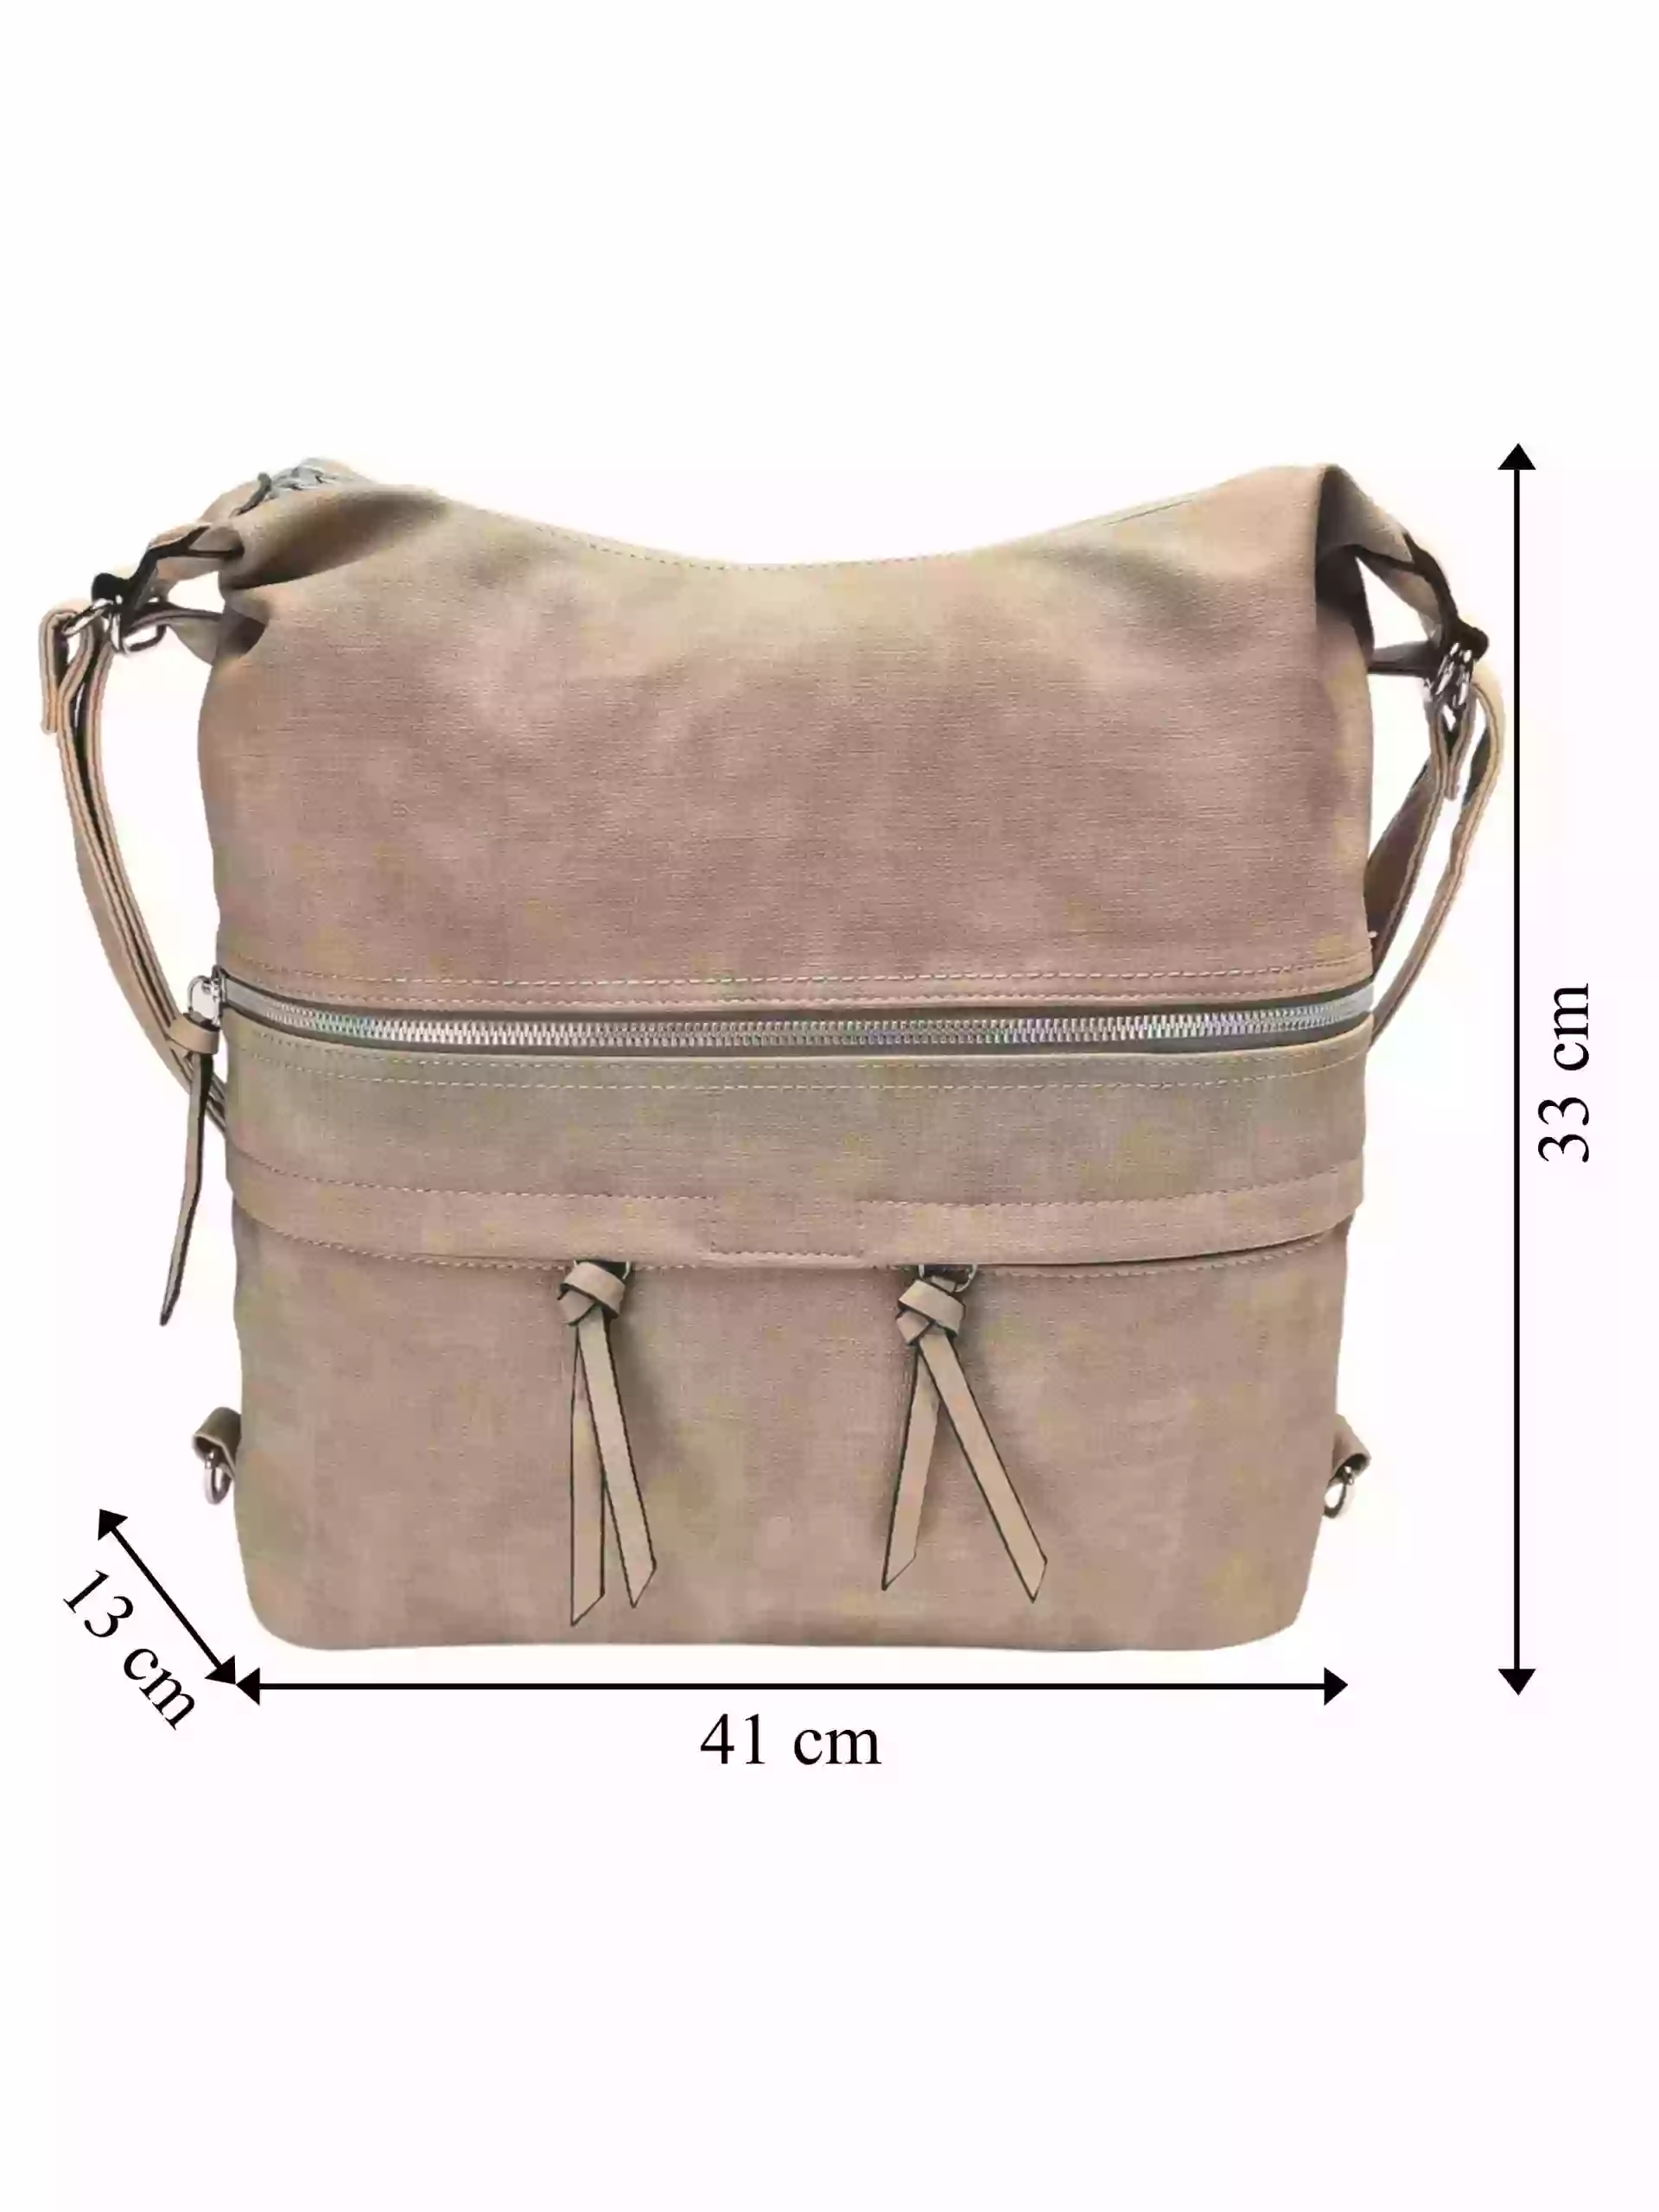 Velká světle hnědá kabelka a batoh 2v1 s kapsami, Tapple, H181175N, přední strana kabelky a batohu 2v1 s rozměry